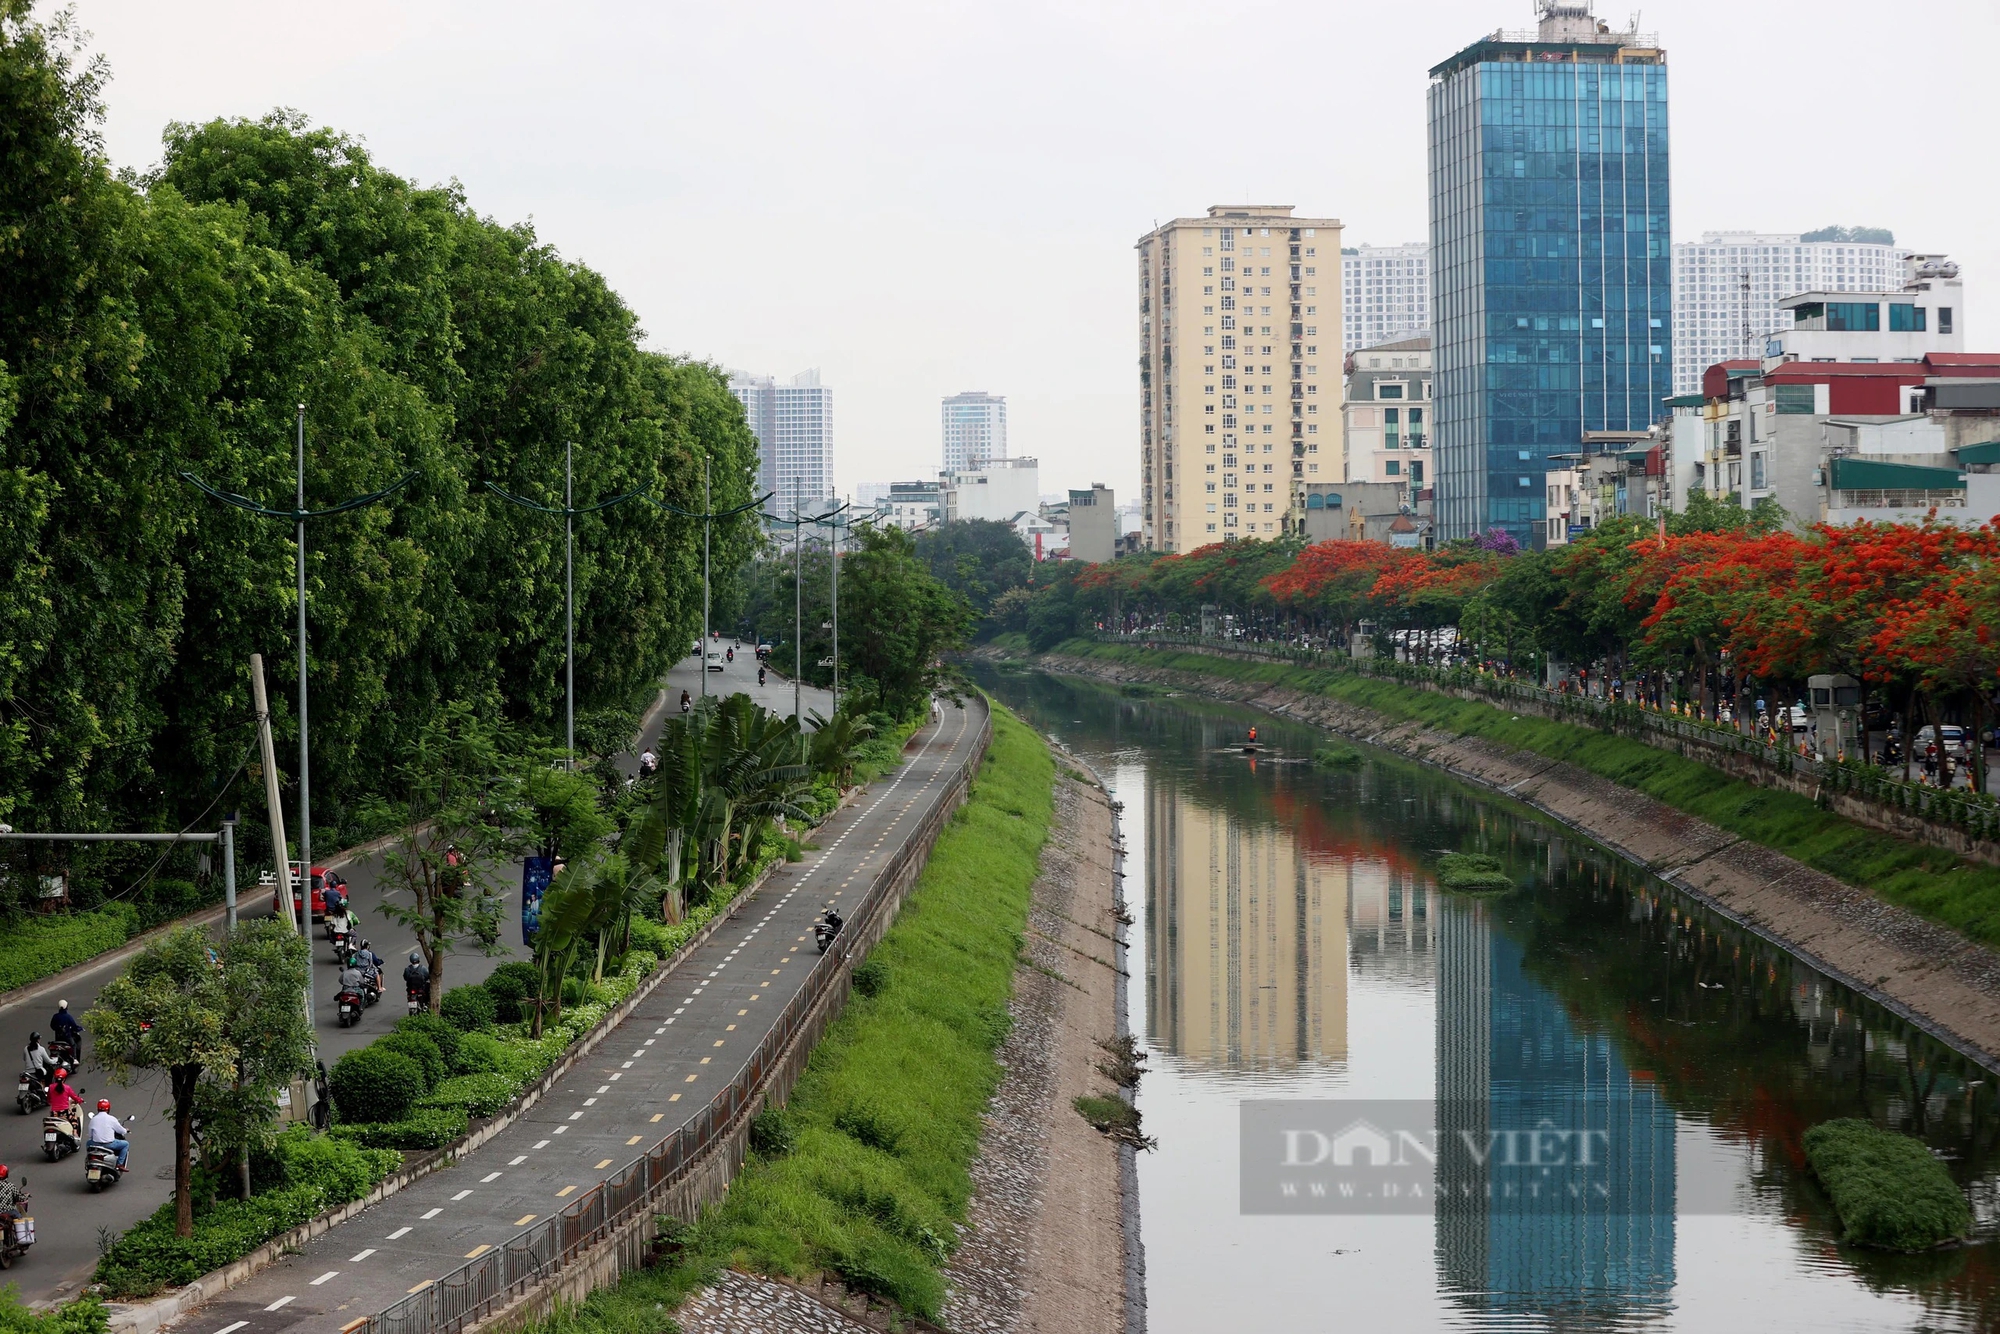 Hình ảnh thảm cỏ xanh mướt, hút mắt trên con đường chỉ dành riêng cho người đi bộ, xe đạp ở Hà Nội- Ảnh 1.